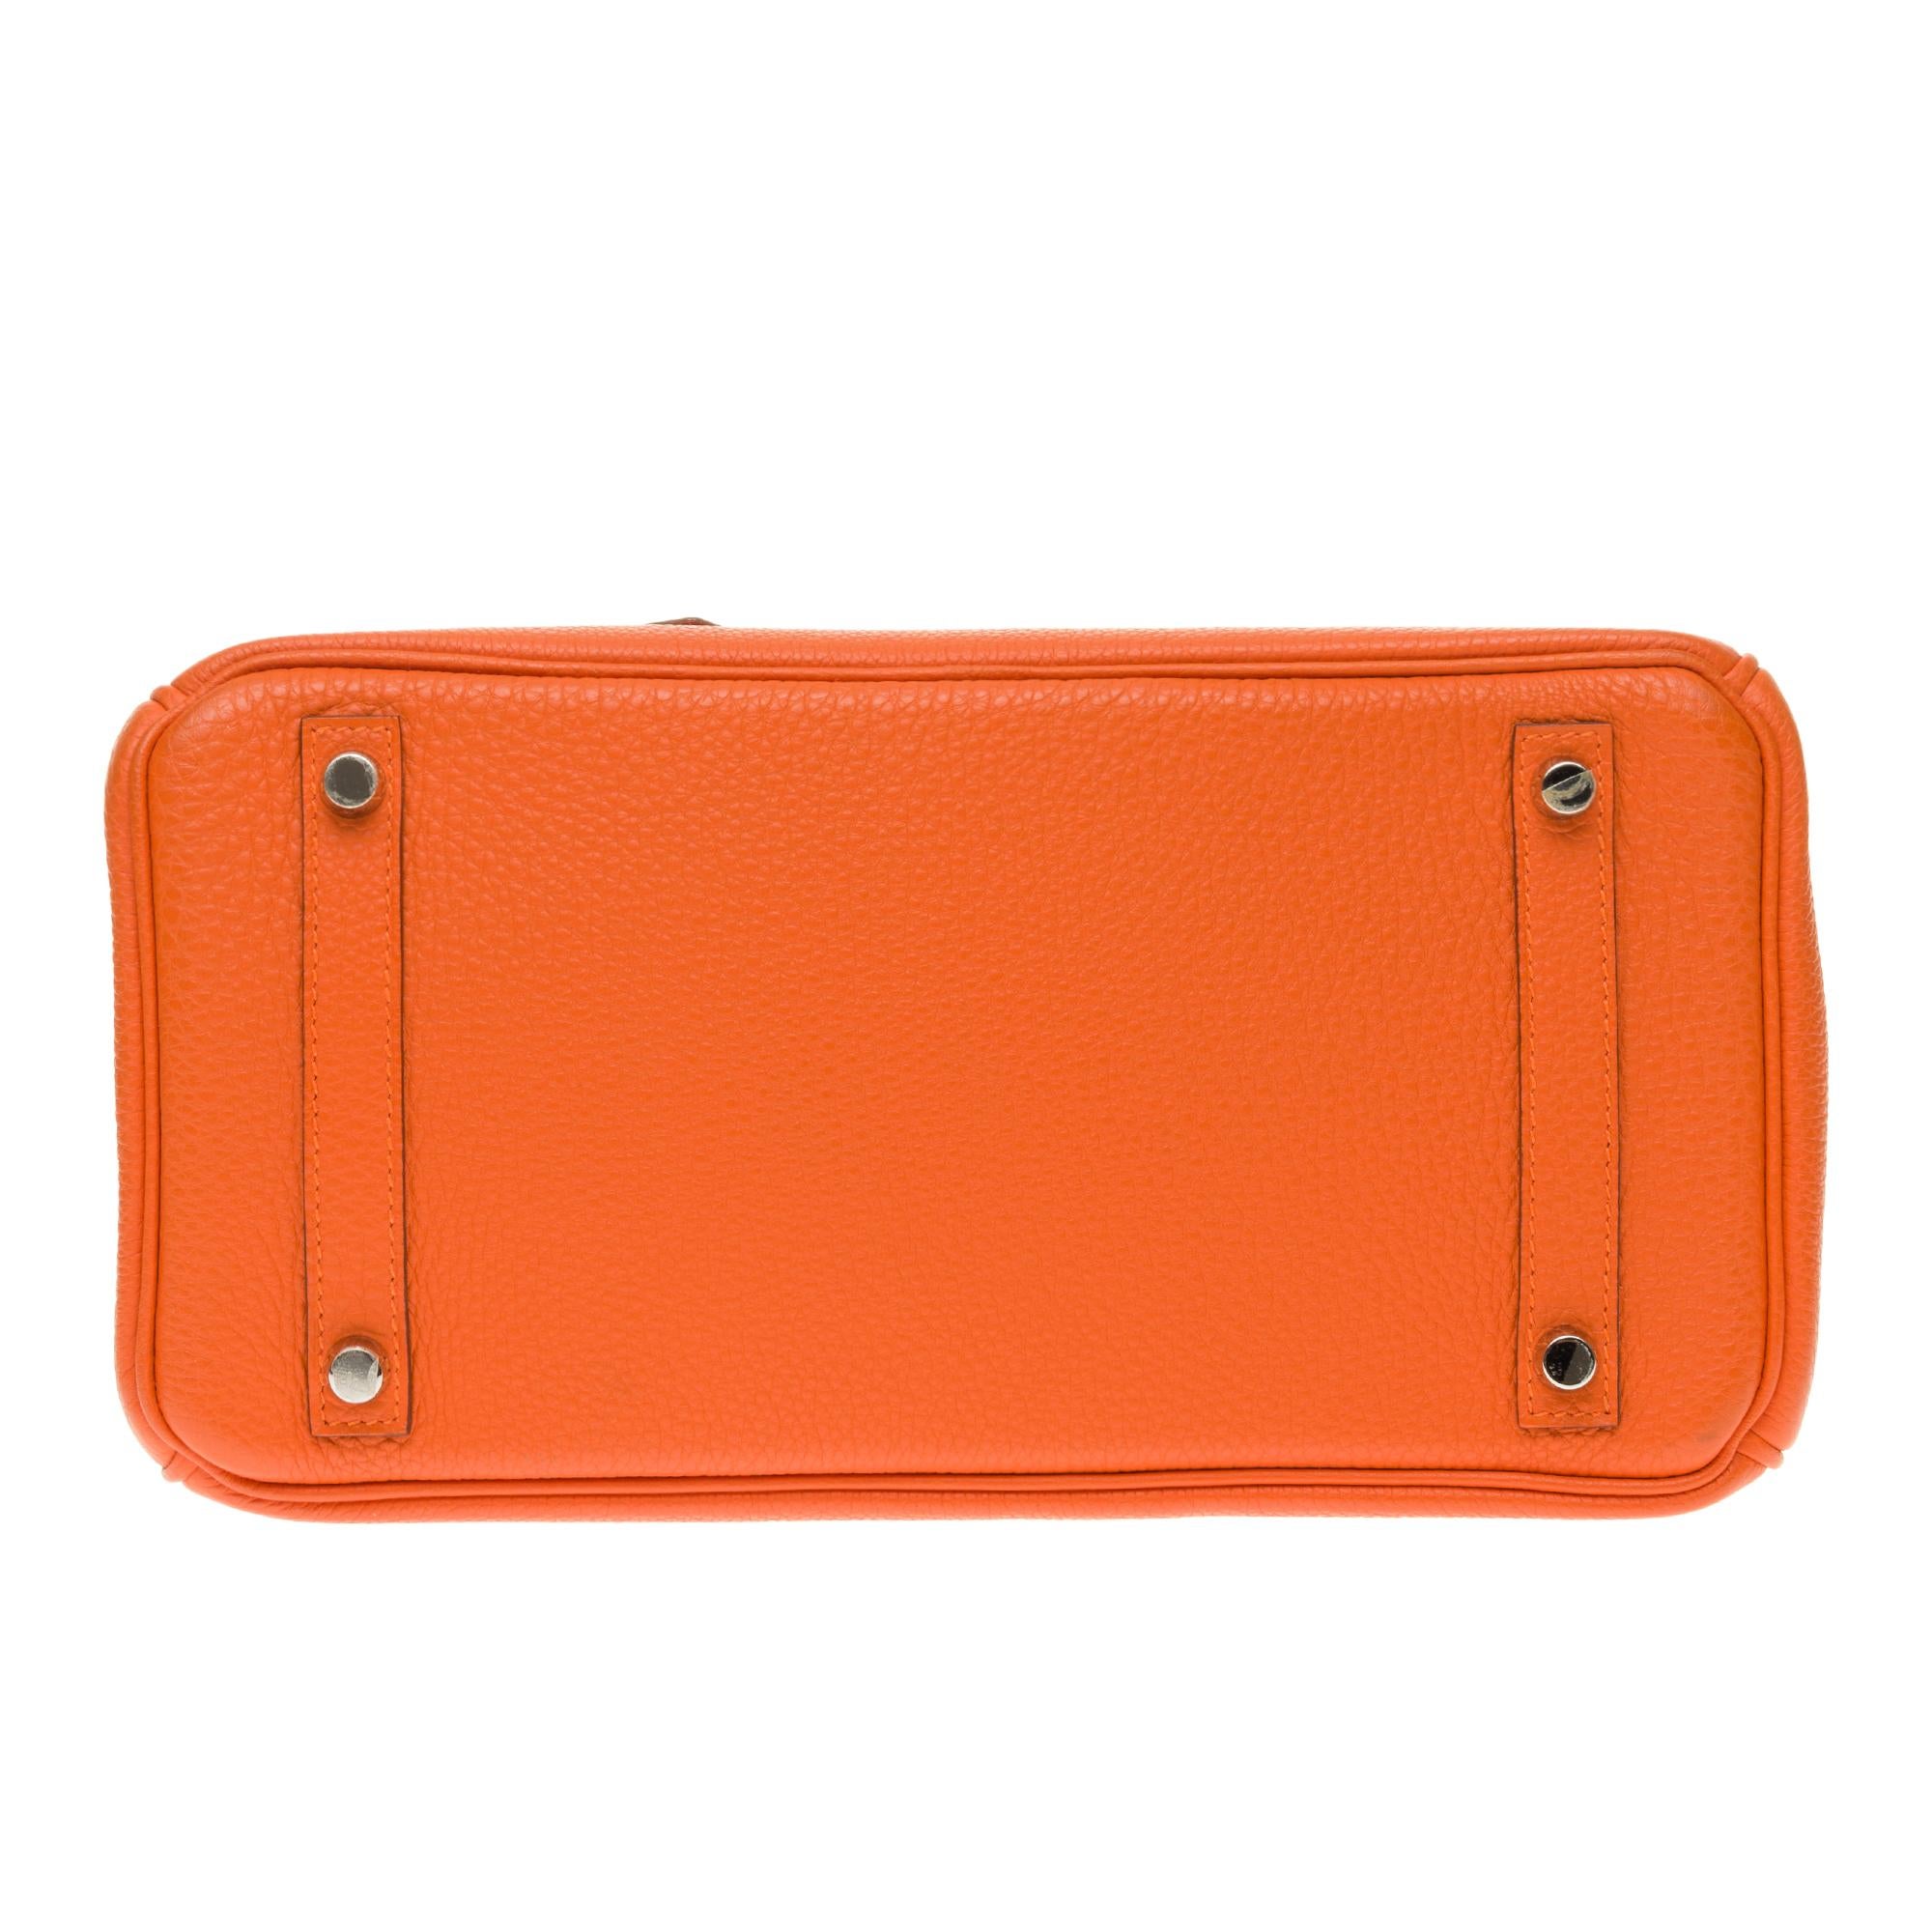 Hermès Birkin 30 handbag in Togo orange leather, PHW, new condition  4